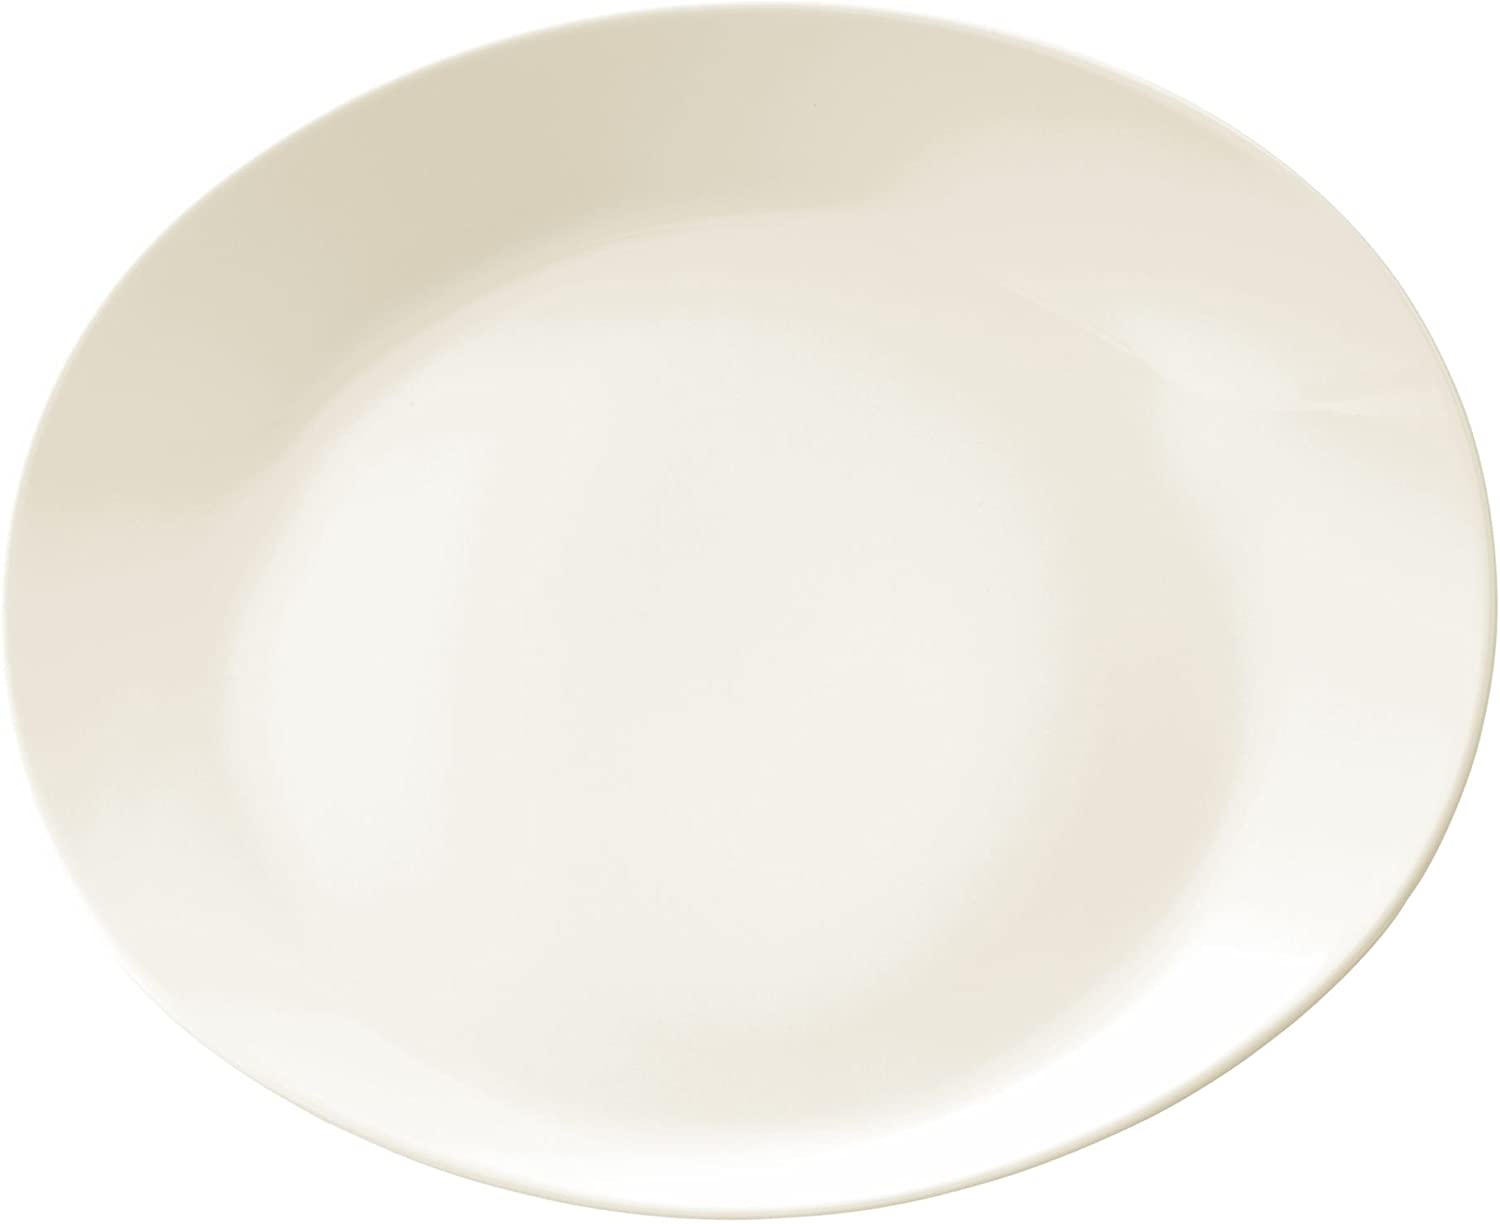 Seltmann Weiden Maxim 00003 28.3 cm Gourmet Plate